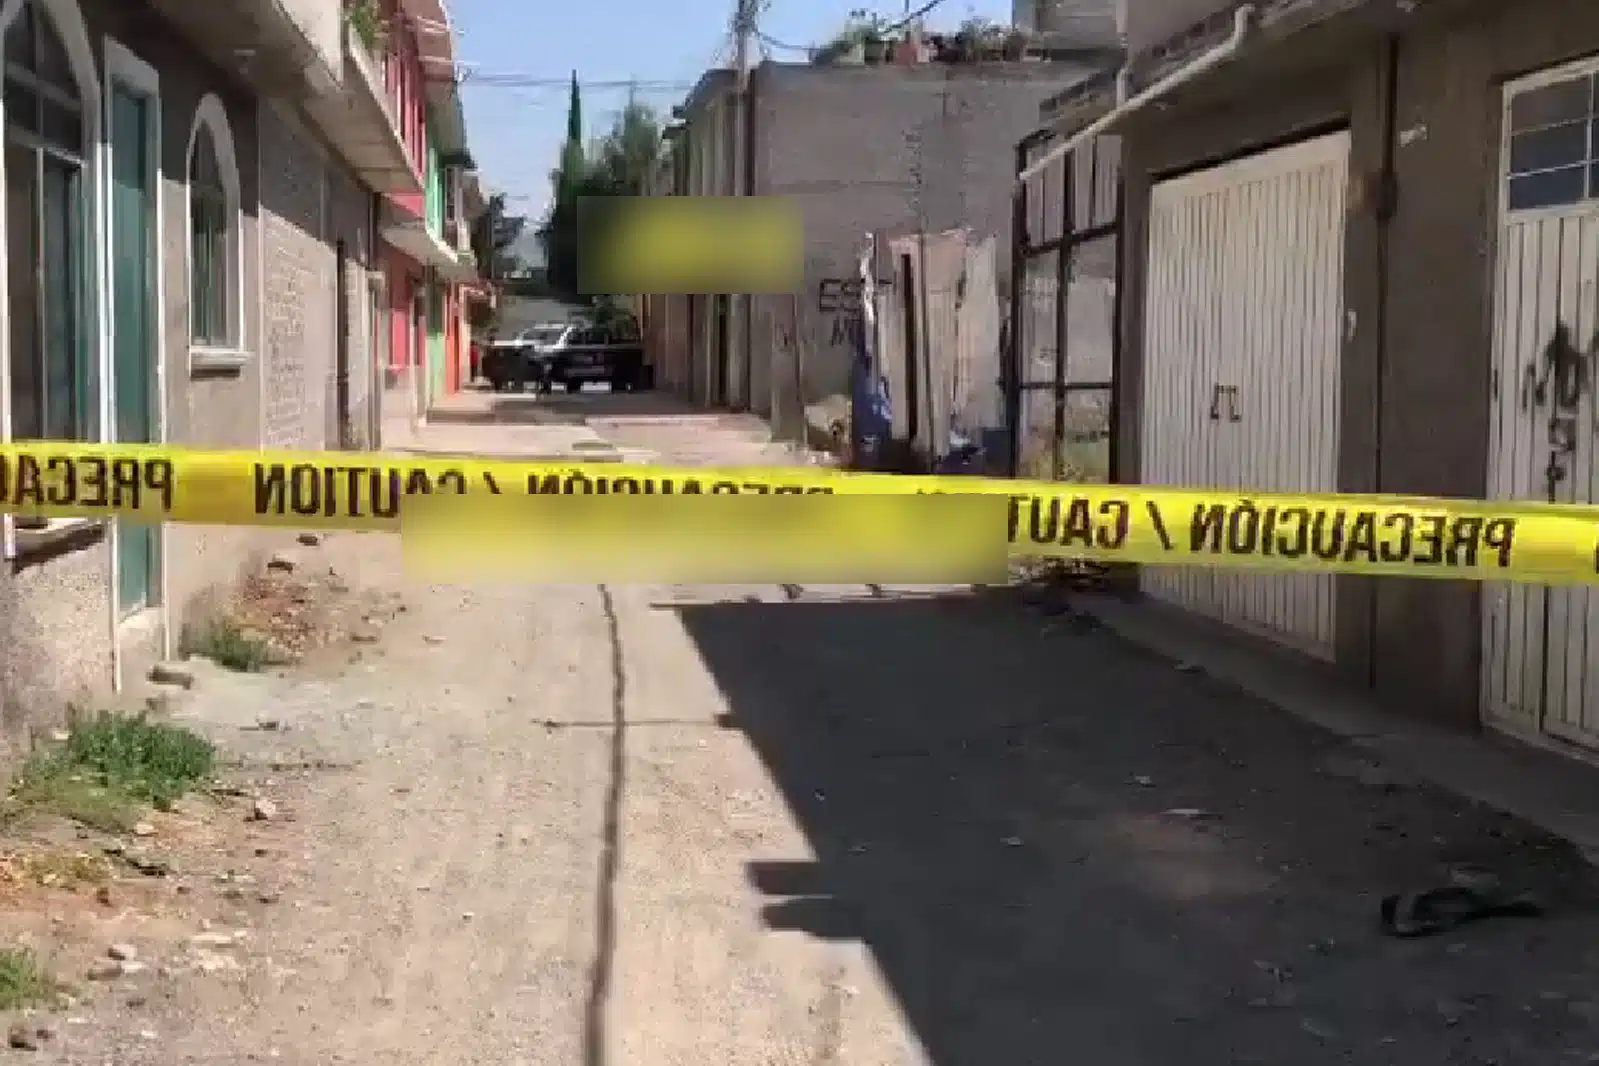 ¡Violencia! A golpes le arrebatan la vida a un hombre en calles de Ecatepec